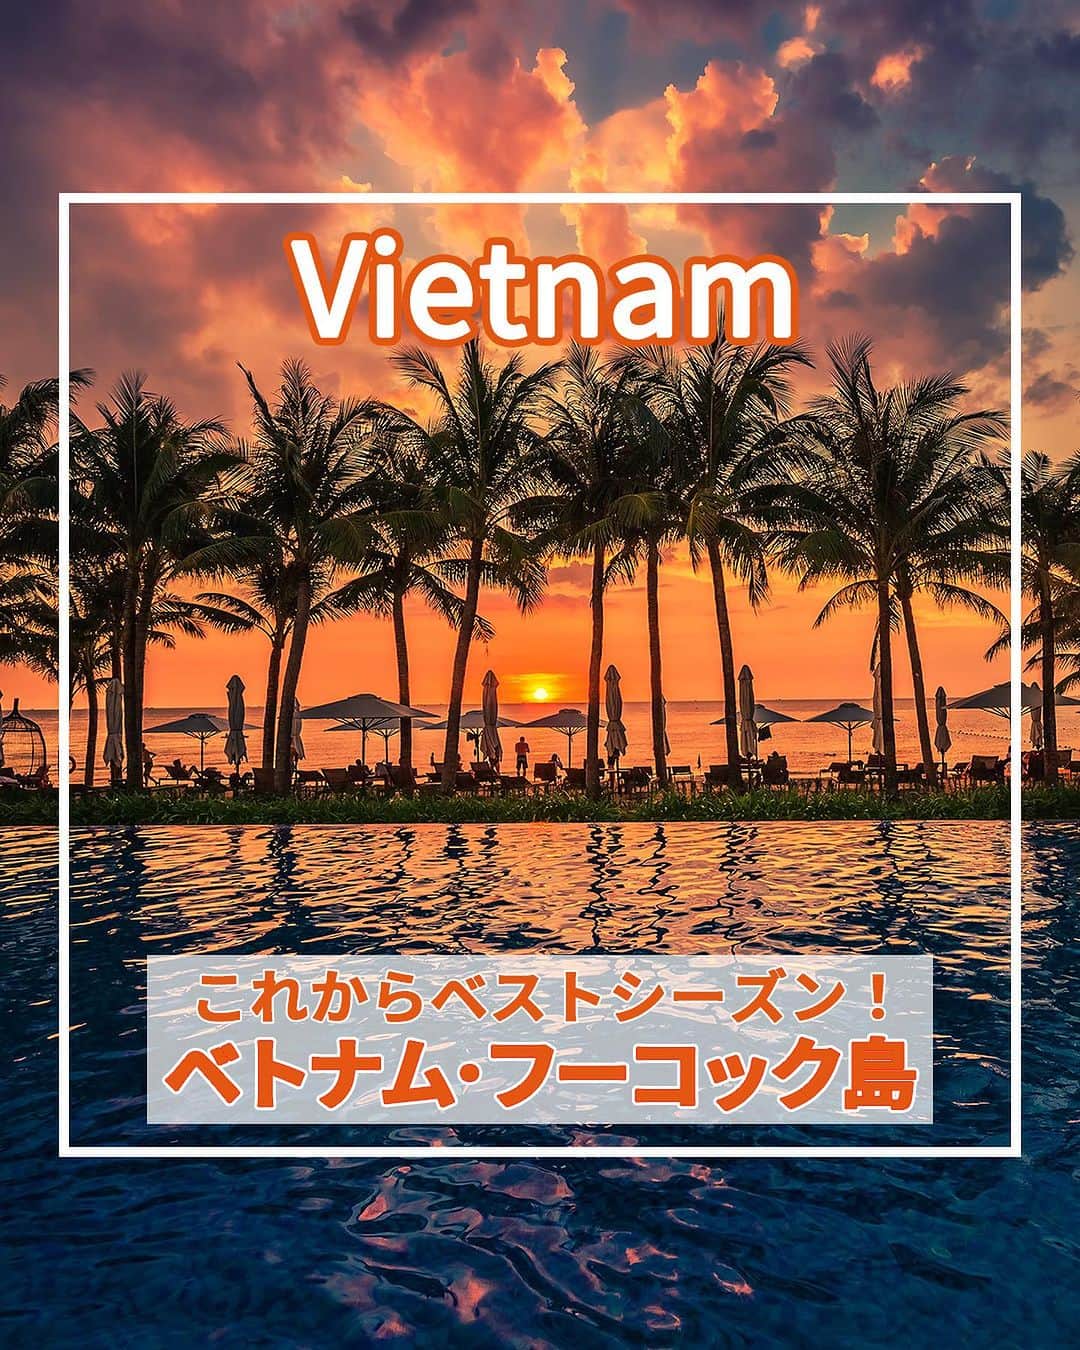 旅工房公式のインスタグラム：「＼お値打ち価格で行ける人気リゾート？！✨／  #ベトナム #フーコック   こんにちは！☺  今回はフーコックのベトナムをご紹介します！  高いイメージのフーコックですが、旅工房のツアーは10万円台のツアーが多数あるんですよ✨！  4名1室や6名1室のコンドミニアムタイプホテルならなんと10万前半のツアーも…！   ツアー情報や、ベトナムの観光スポットをまとめているのでぜひ次の海外旅行の参考にしてみてください！   実際に現地に行ってきた様子はハイライトのフーコックにまとまっているので、そちらも併せてCheck💨   🇻🇳  #旅工房 #フーコック女子旅 #フーコック旅行 #リゾート #ベトナム女子旅  #ヴィンパール #サオビーチ  #ヴィンパールランド #フーコック観光 #フーコックグルメ #ベトナムビーチ #ベトナムグルメ #フーコックナイトマーケット #ディンカウナイトマーケット #夏旅 #tabijo #海外旅行 #旅行好きな人と繋がりたい #海外旅行準備 #旅好き女子 #海外旅行行きたい #海外旅行計画 #旅スタグラム #海外一人旅 #ビーチ #オールインクルーシブ #ベトナム旅行」